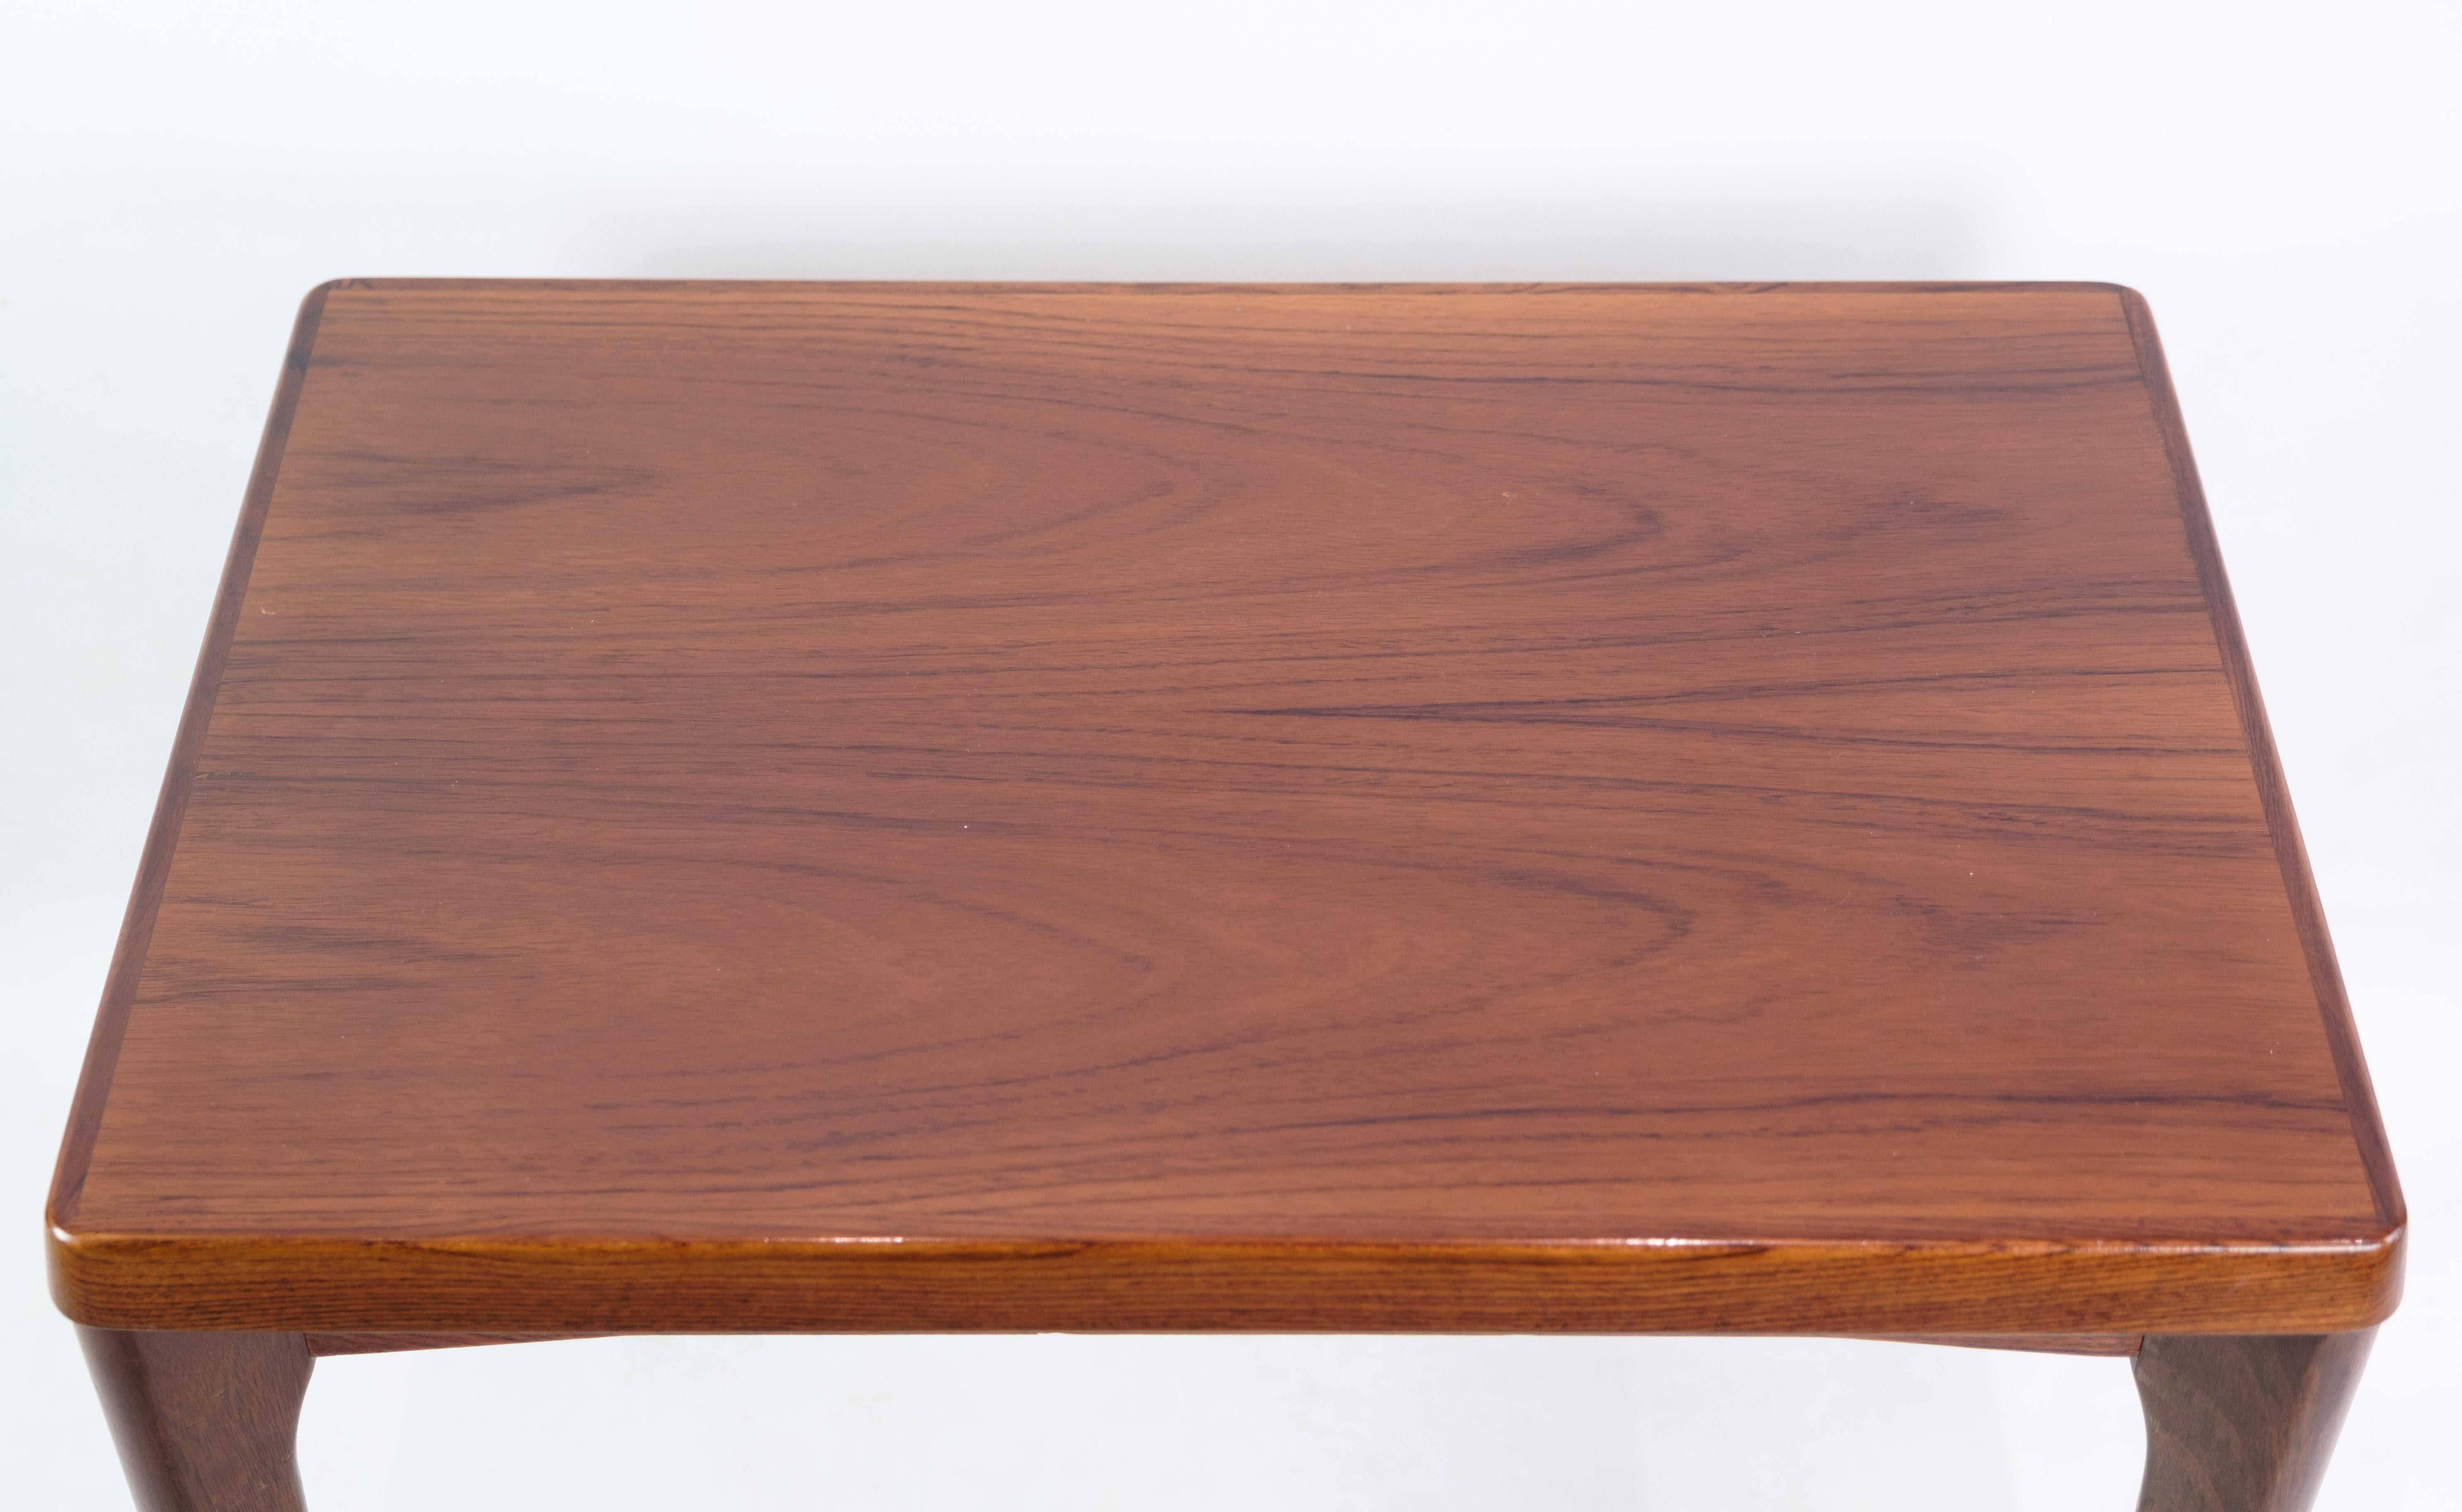 Table d'appoint en bois de rose, conçue par Henning Kjærnulf pour Vejle chairs & møbelfabrik A / S aux alentours des années 1960.

Ce produit sera inspecté minutieusement dans notre atelier professionnel par nos employés qualifiés, qui assurent la